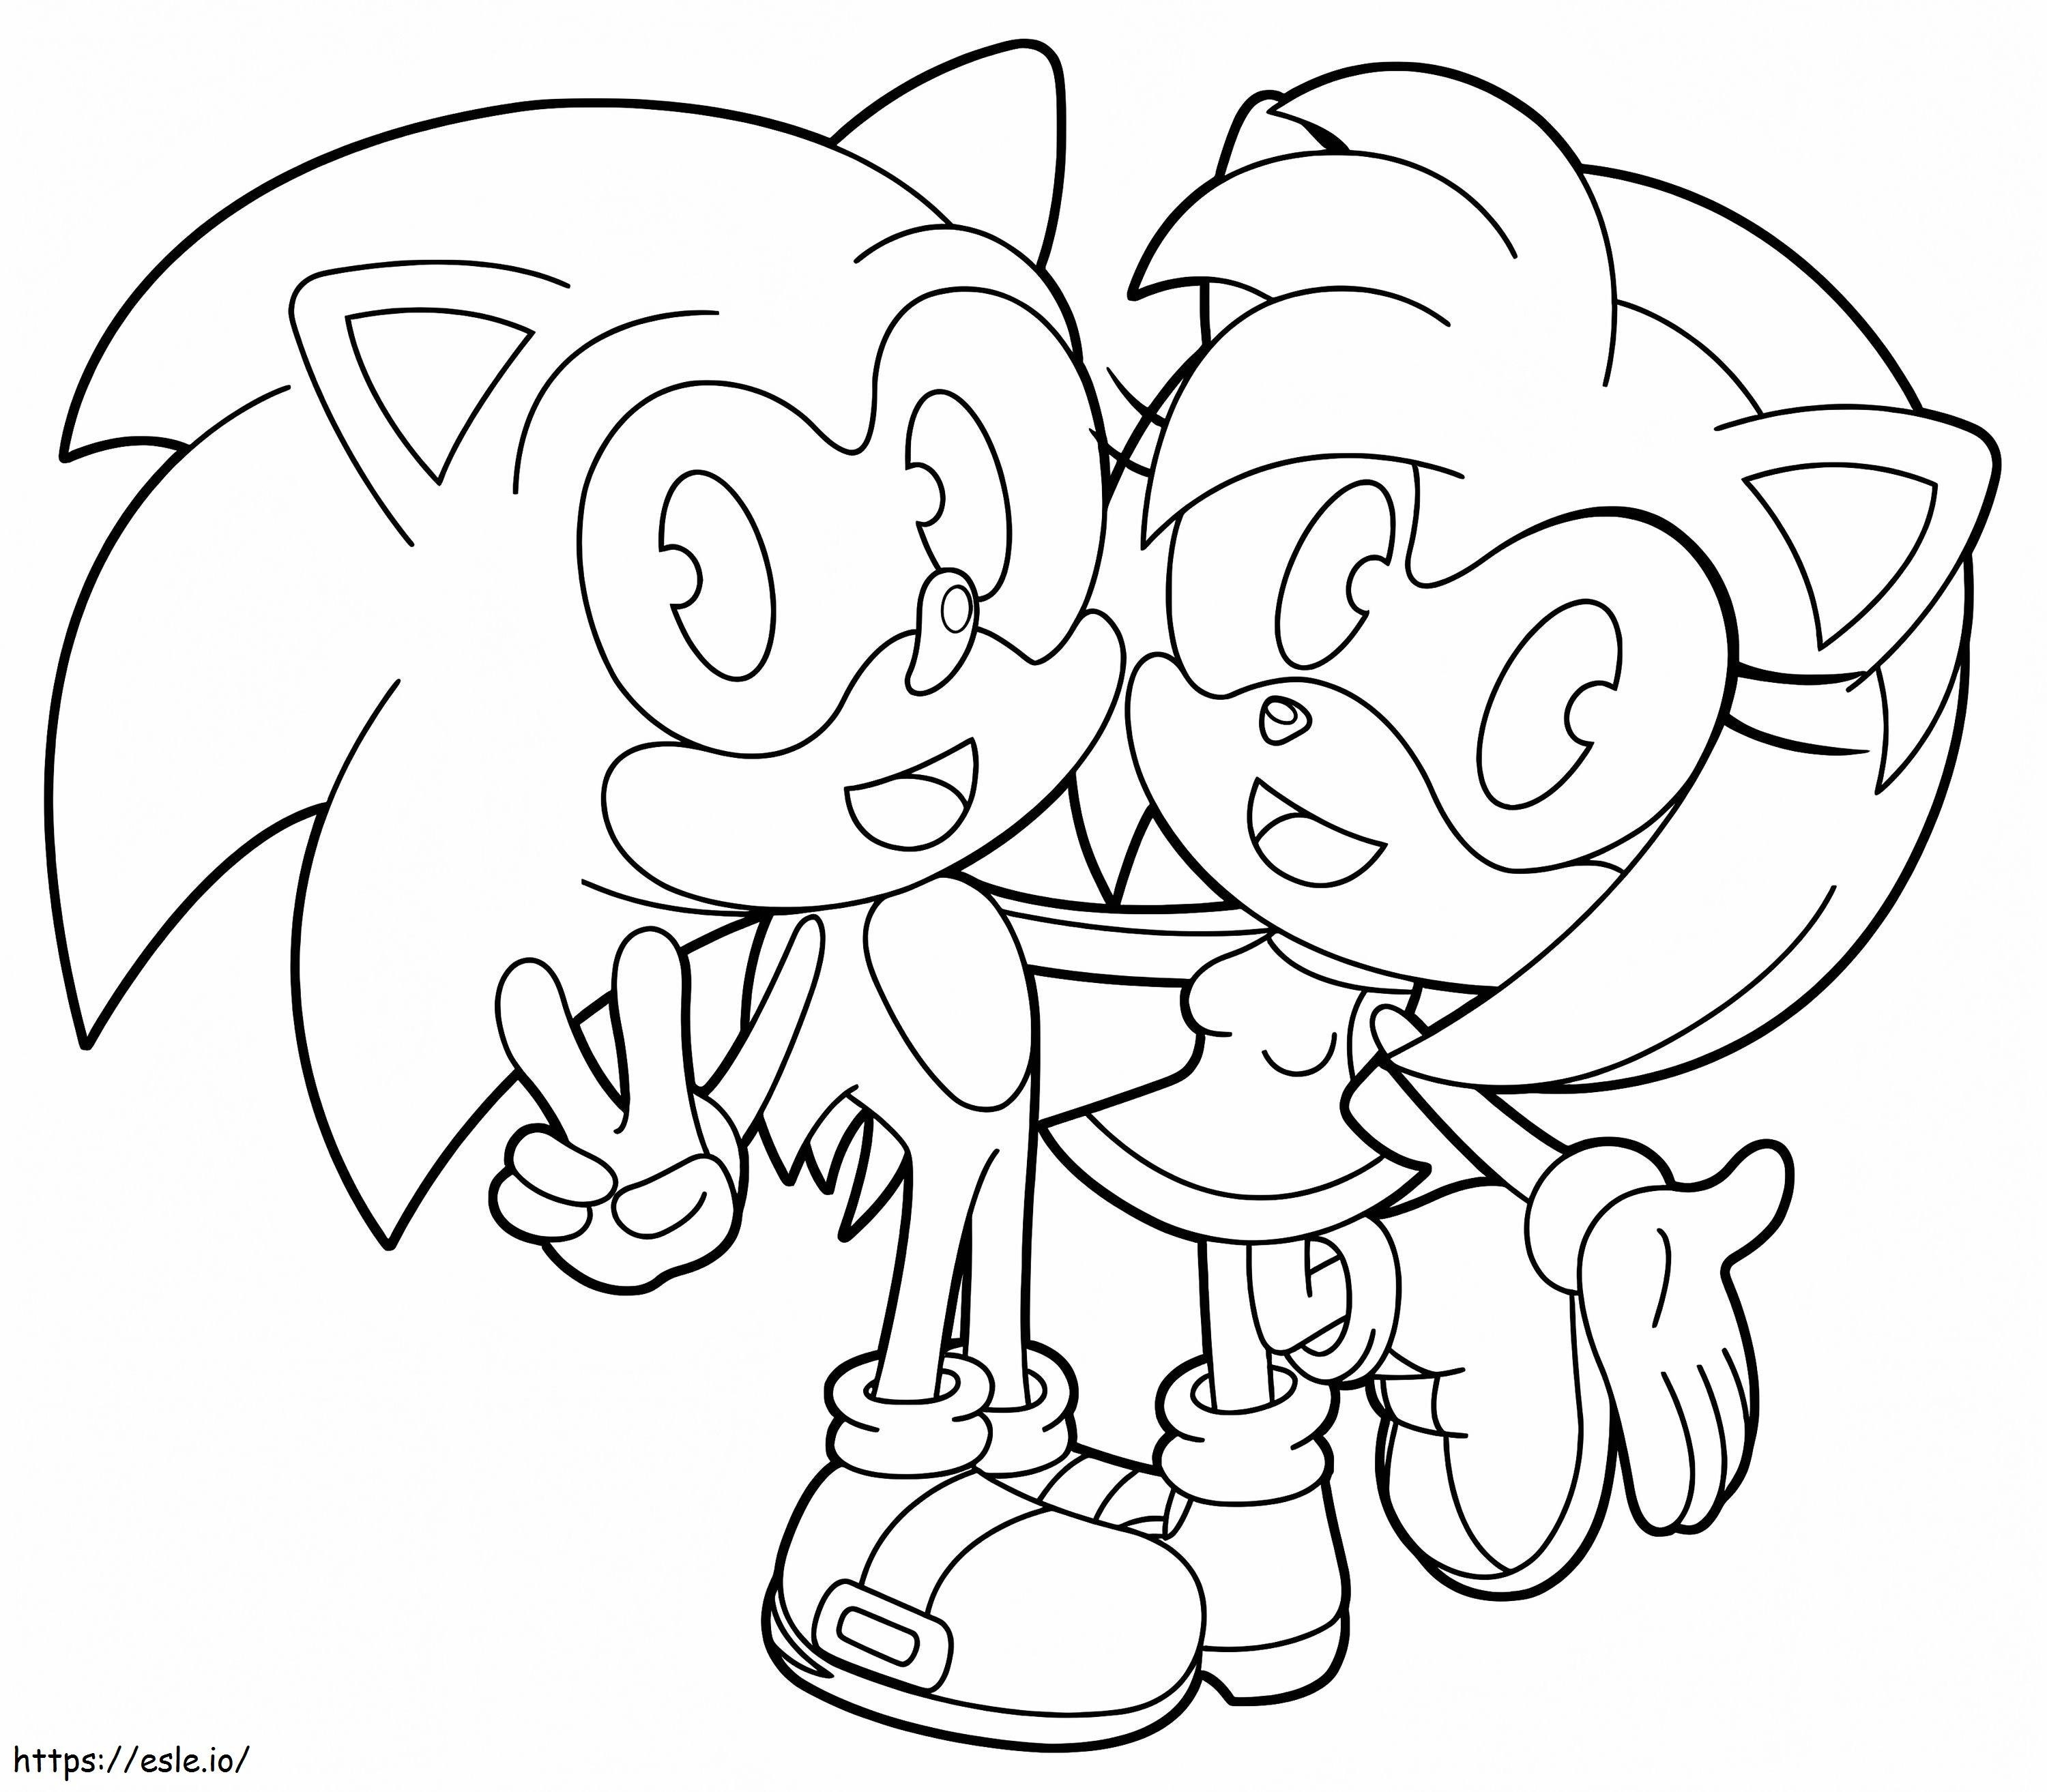 Amy Rose și Sonic de colorat